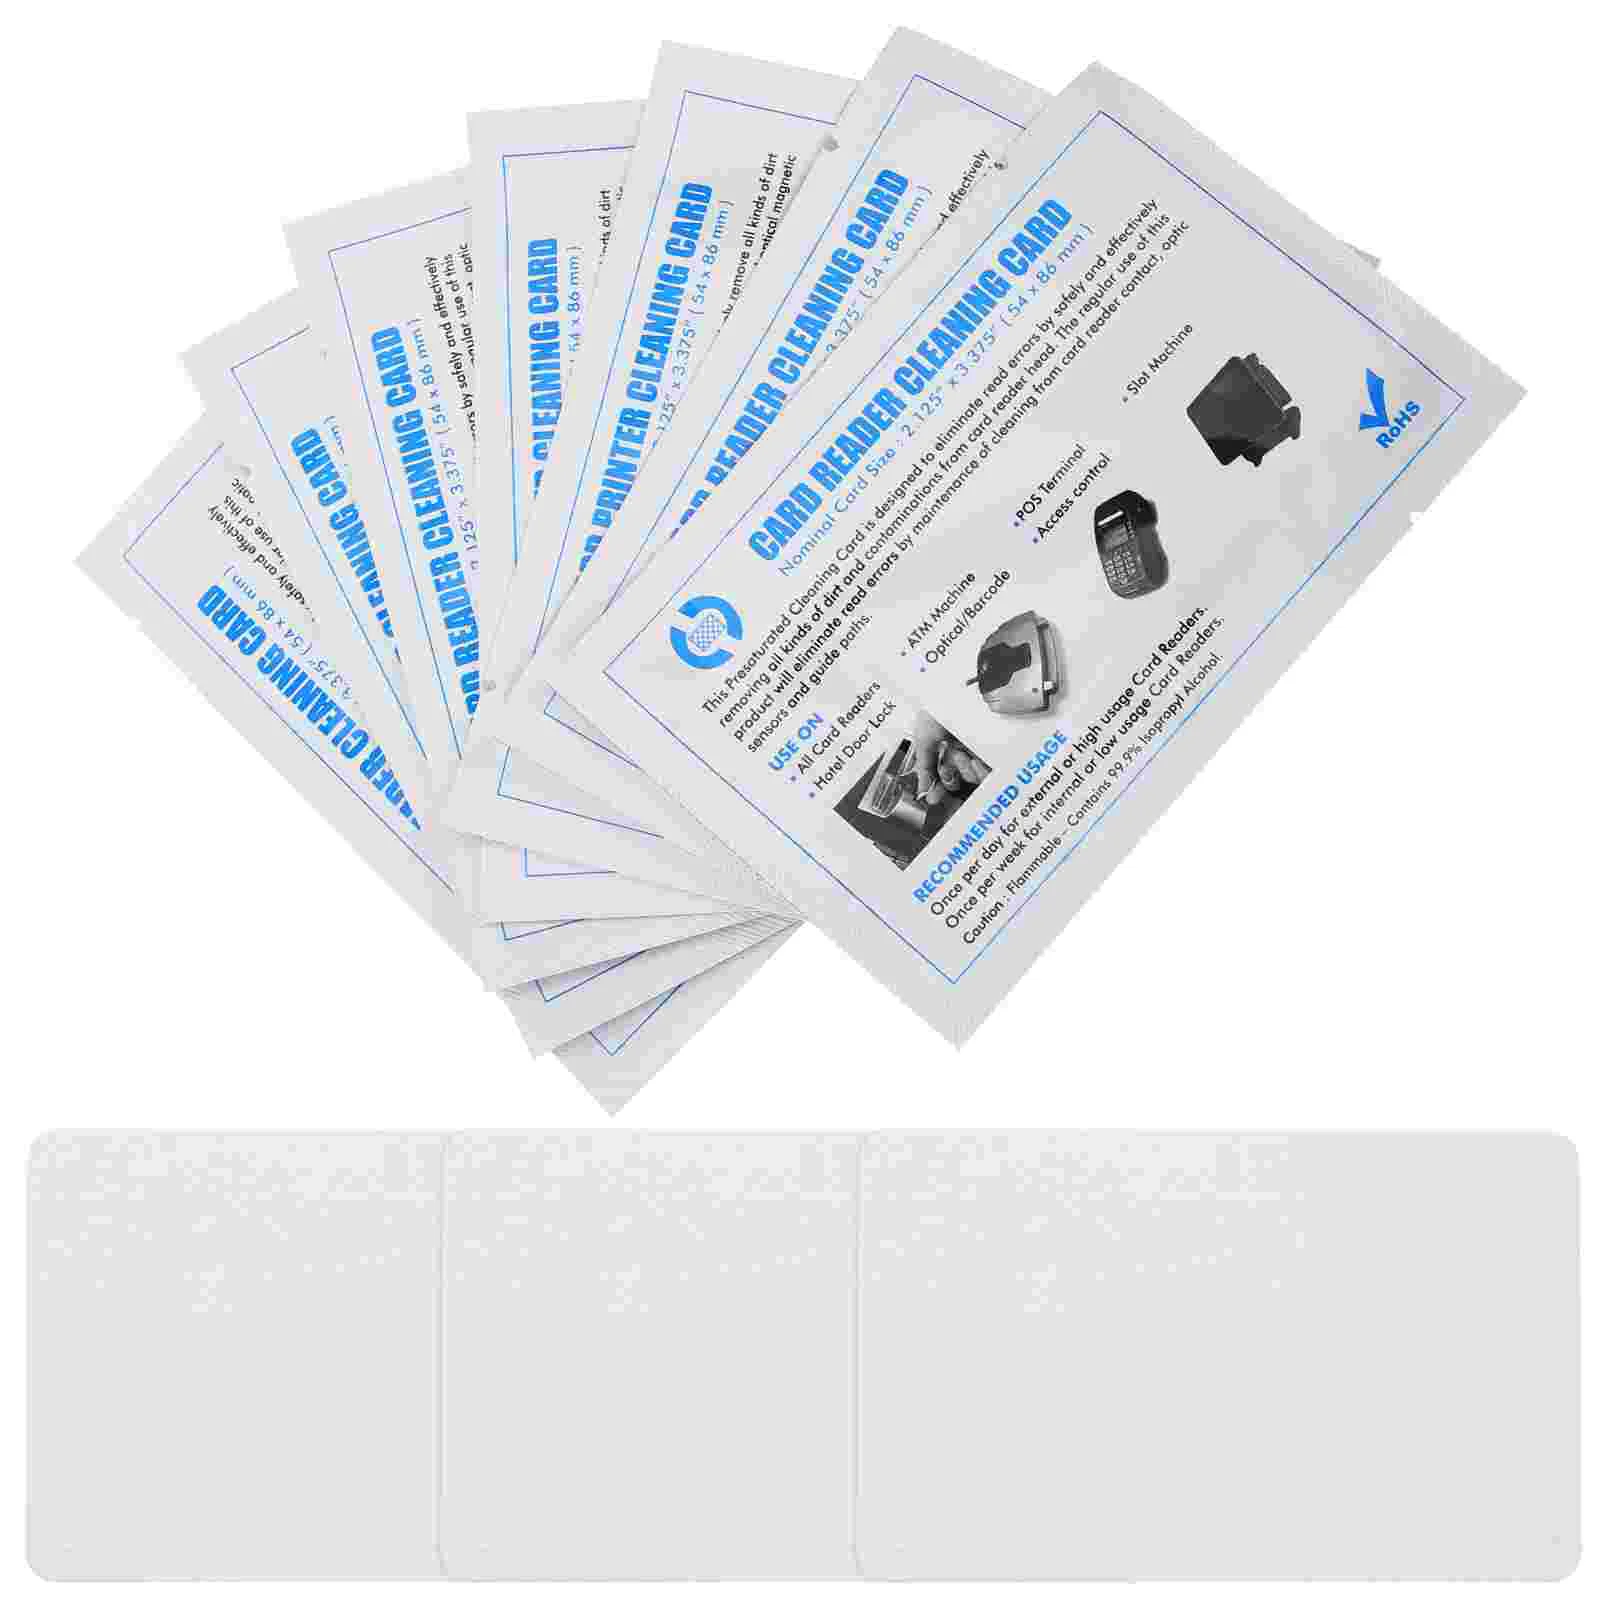 Kartenleser Terminal Reiniger Kredit maschine Reinigung pos Zubehör wieder verwendbare Karten Reiniger Doppelseite Allzweck